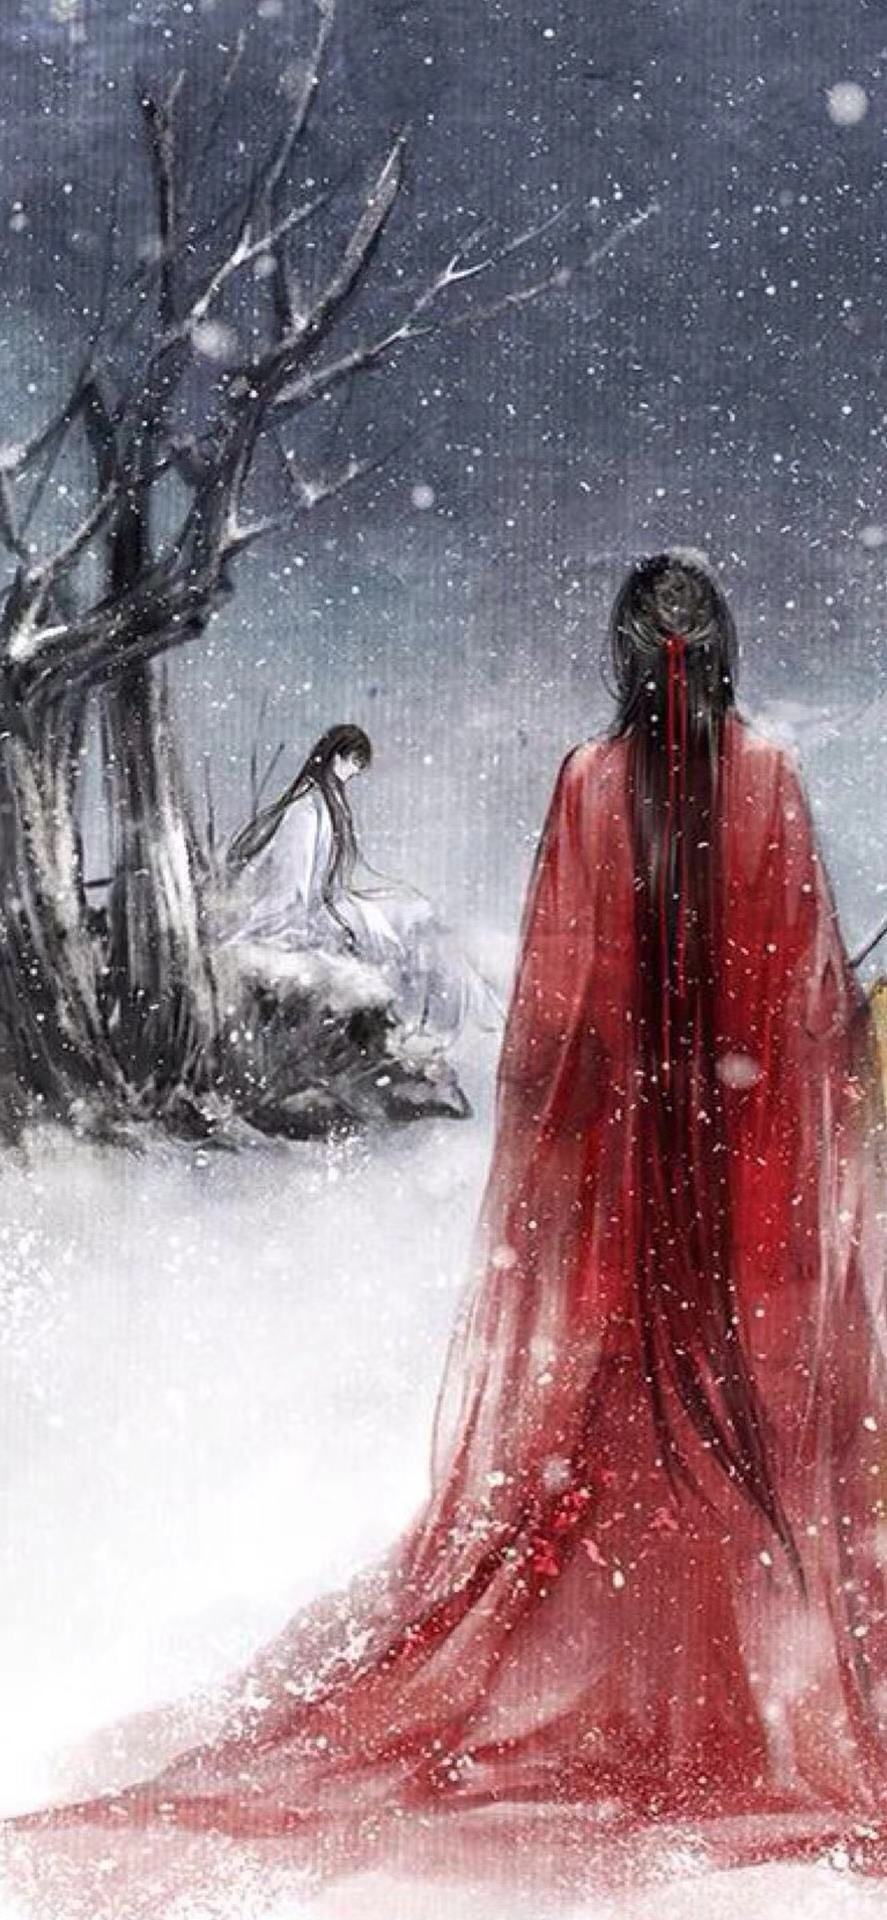 这个雪中的背影真的是非常的悲伤,虽然是红衣但是并没有喜庆的感觉